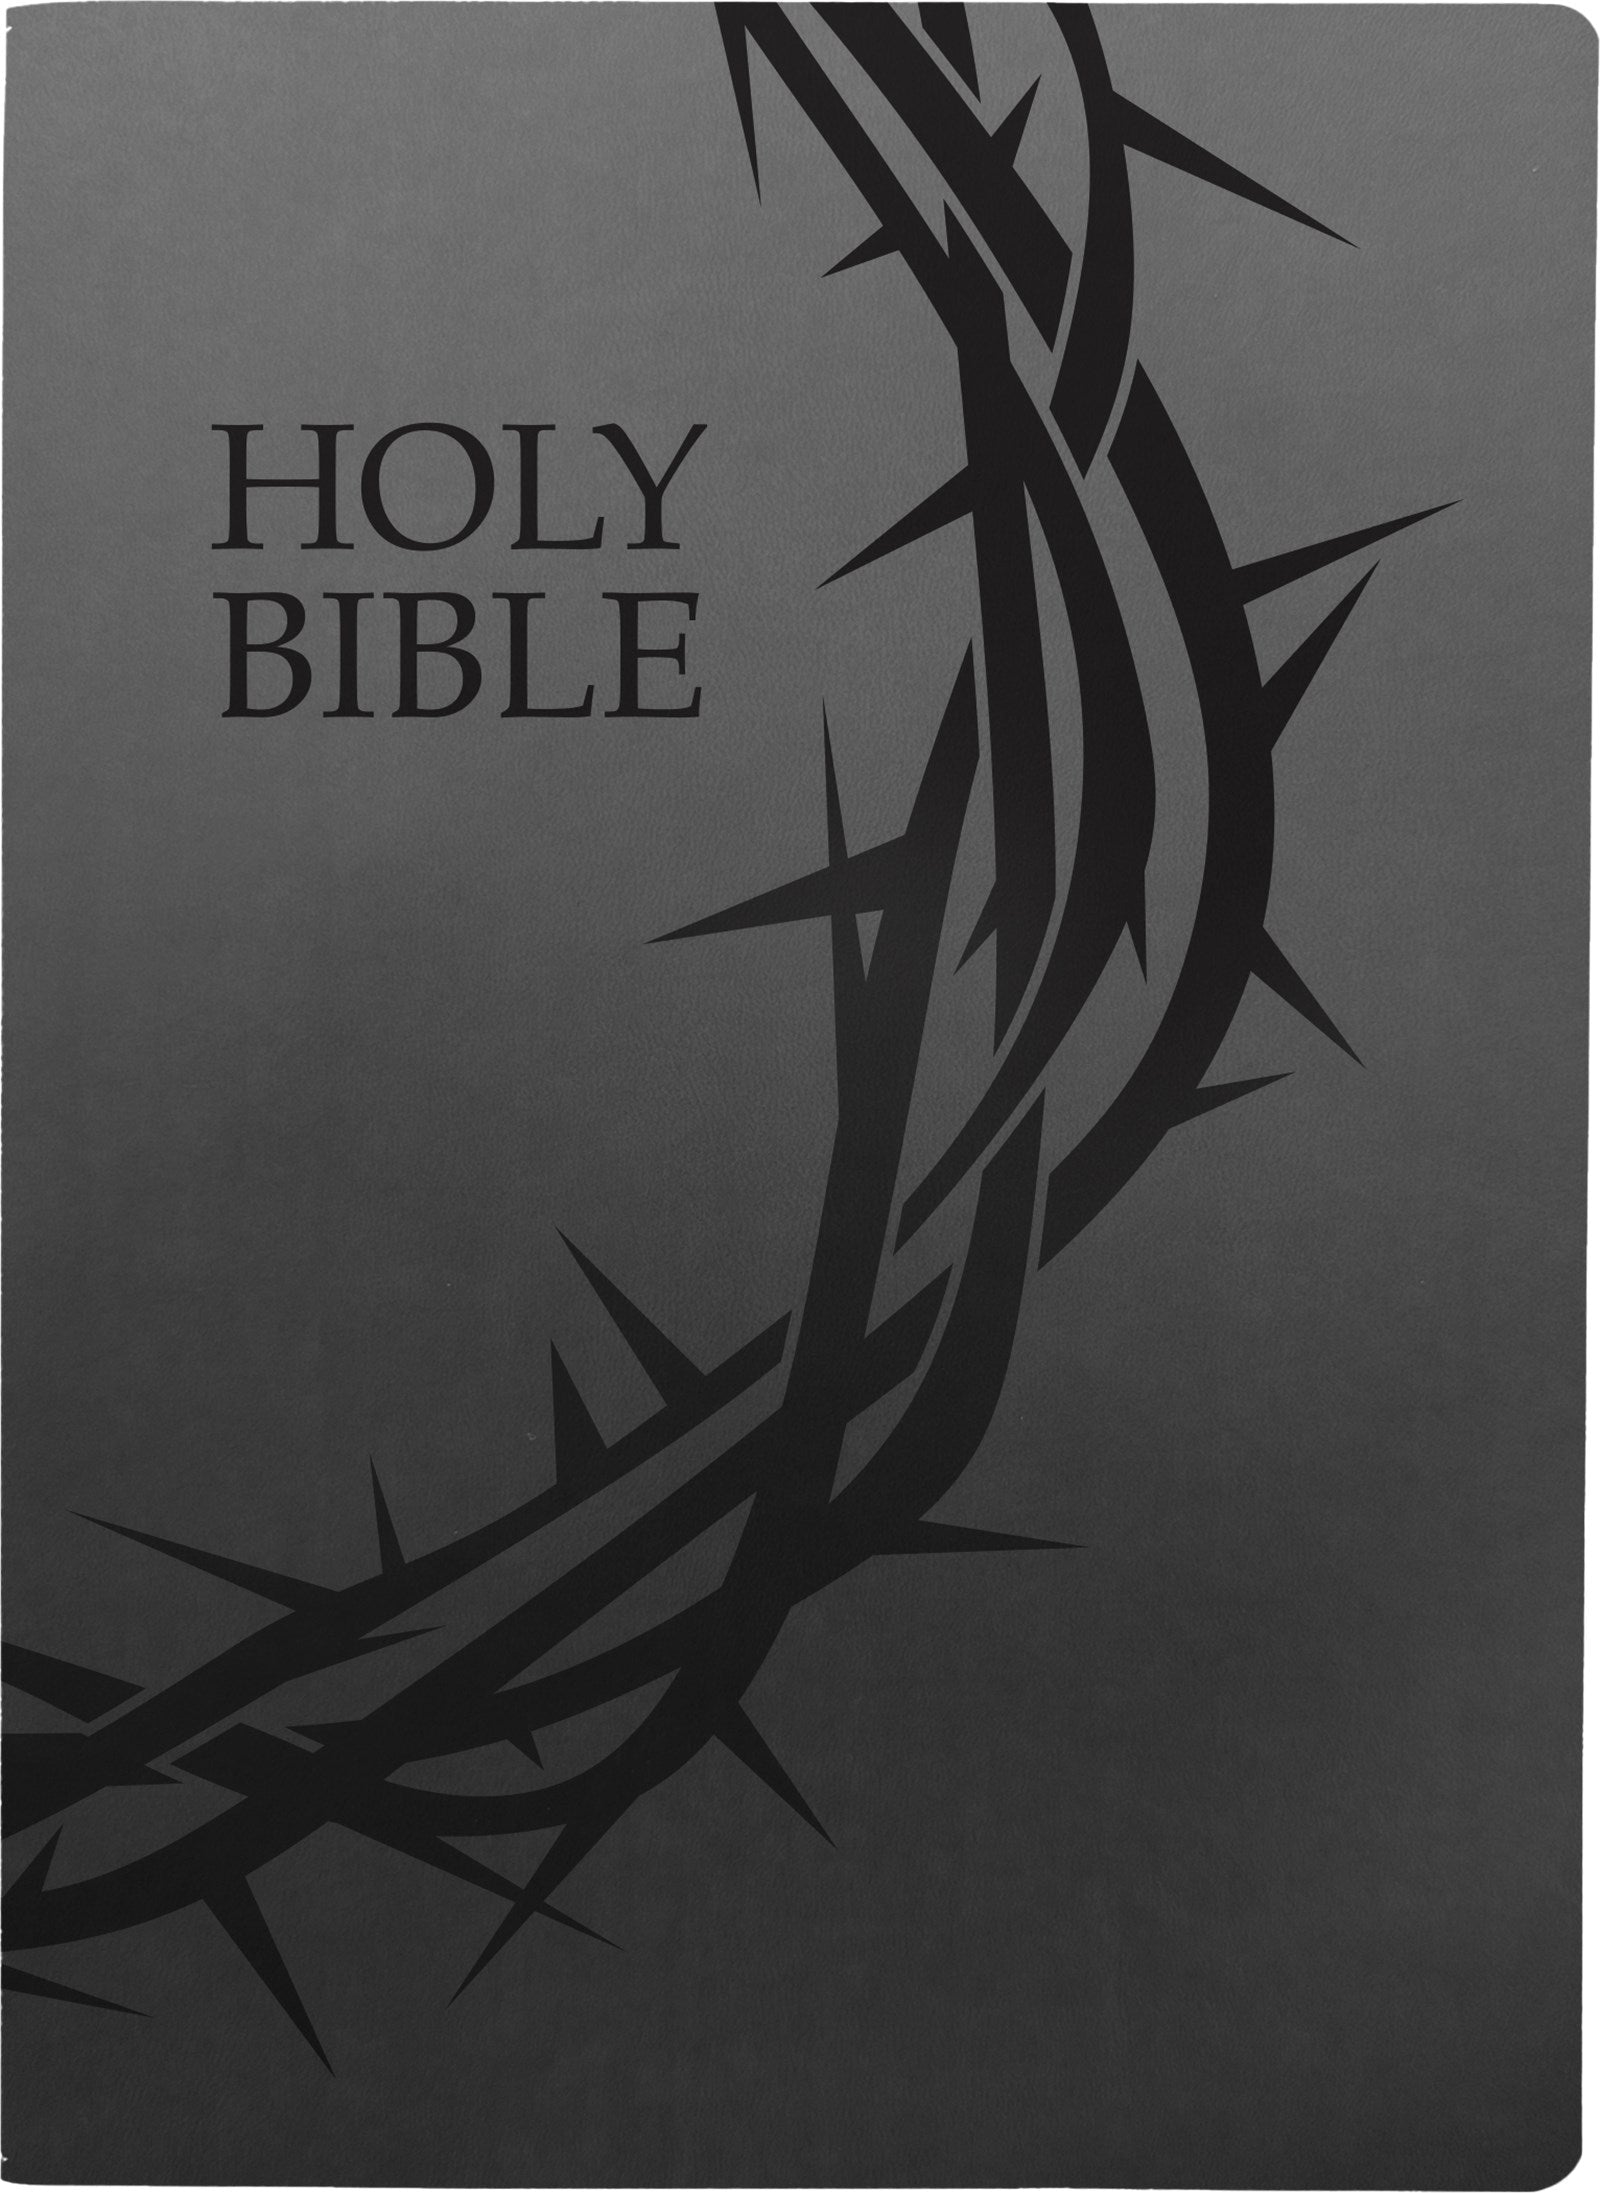 KJV Holy Bible Crown of Thorns Design Large Print-Black Ultrasoft